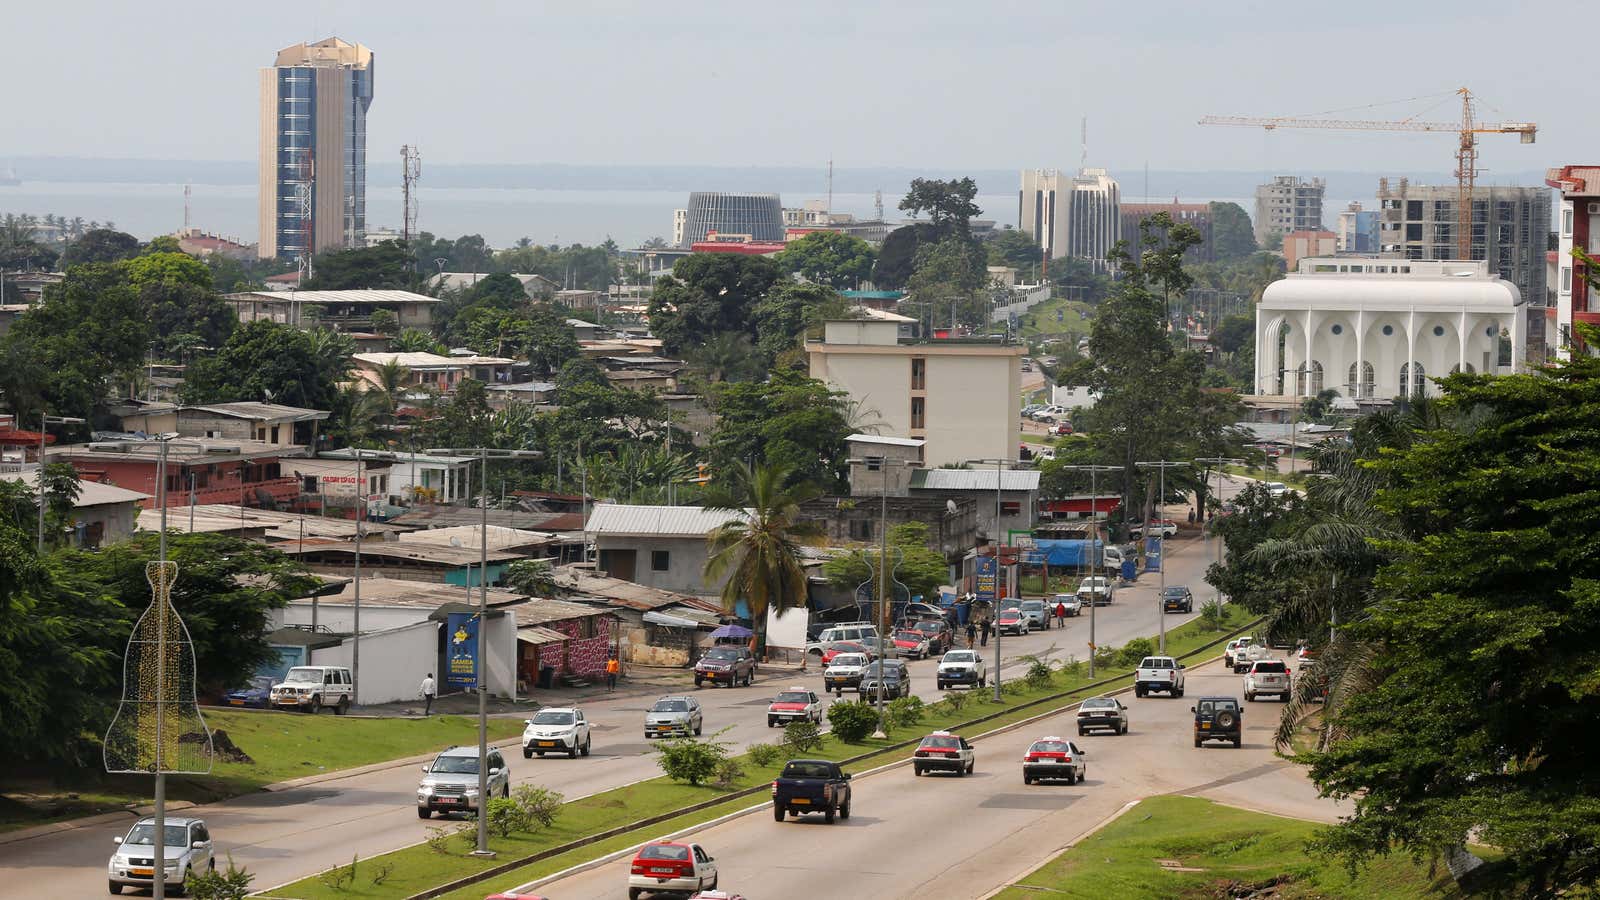 Libreville, Gabon’s capital